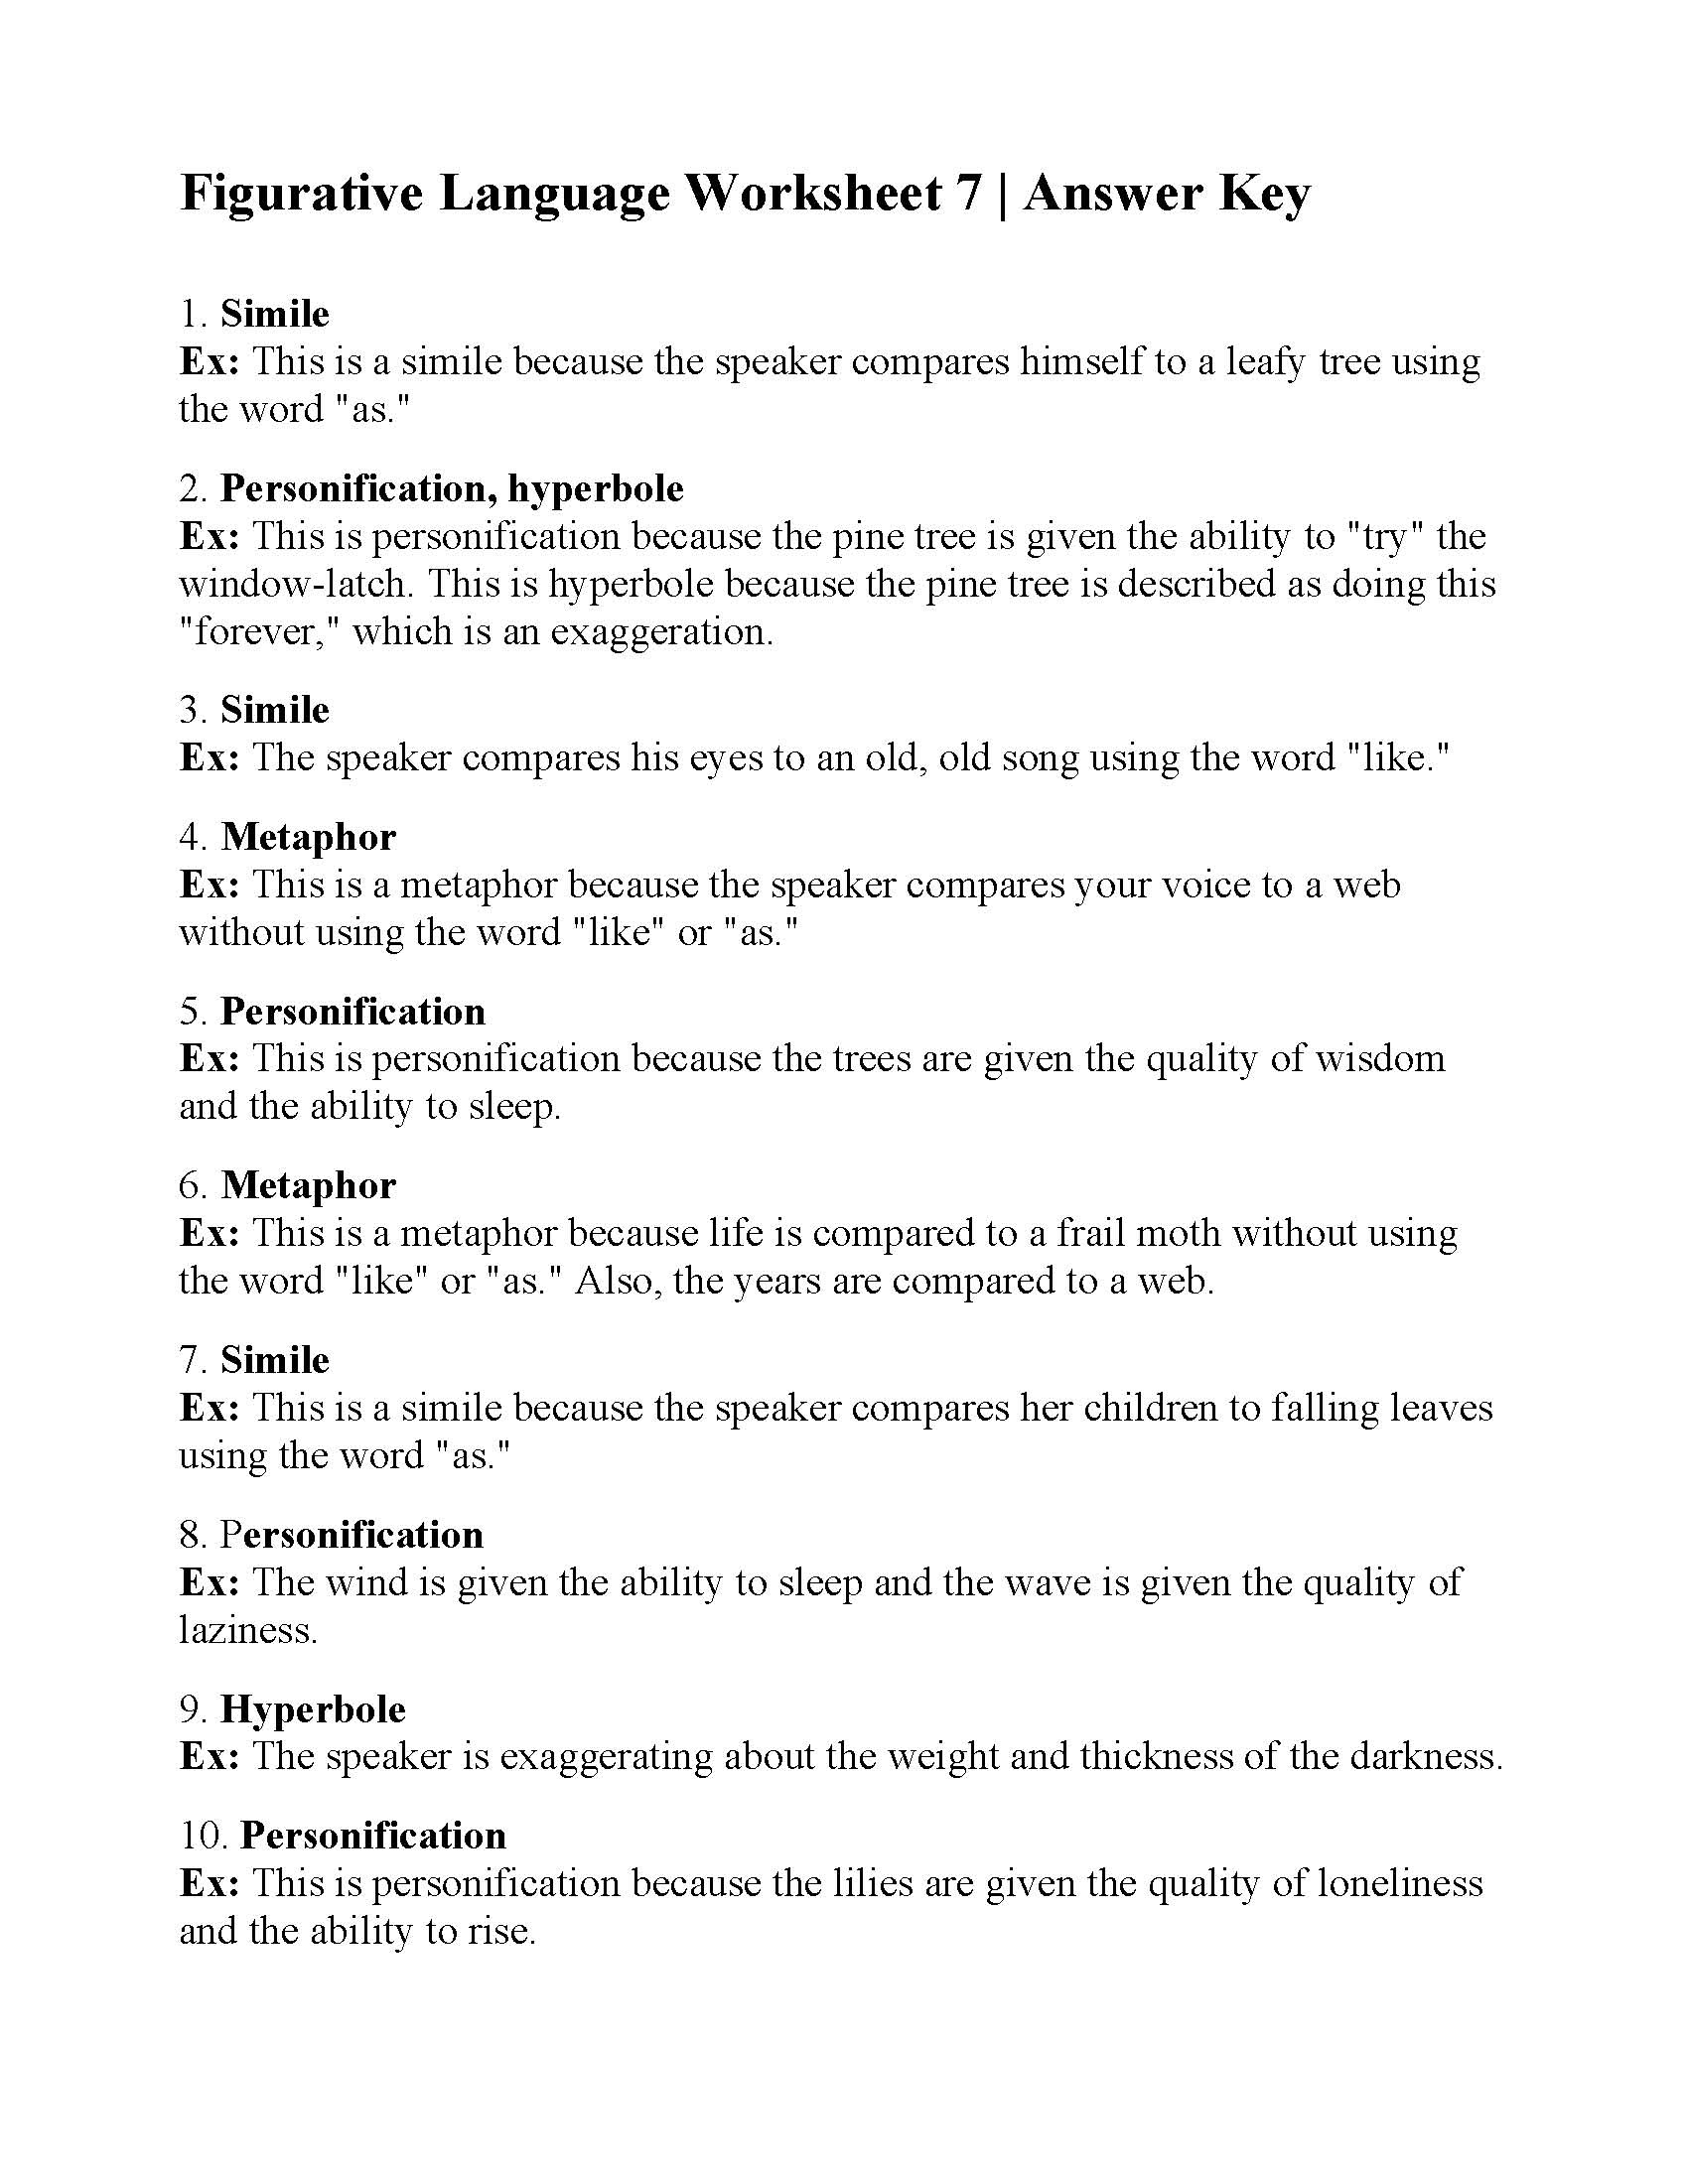 Figurative Language Worksheet 7 Answers